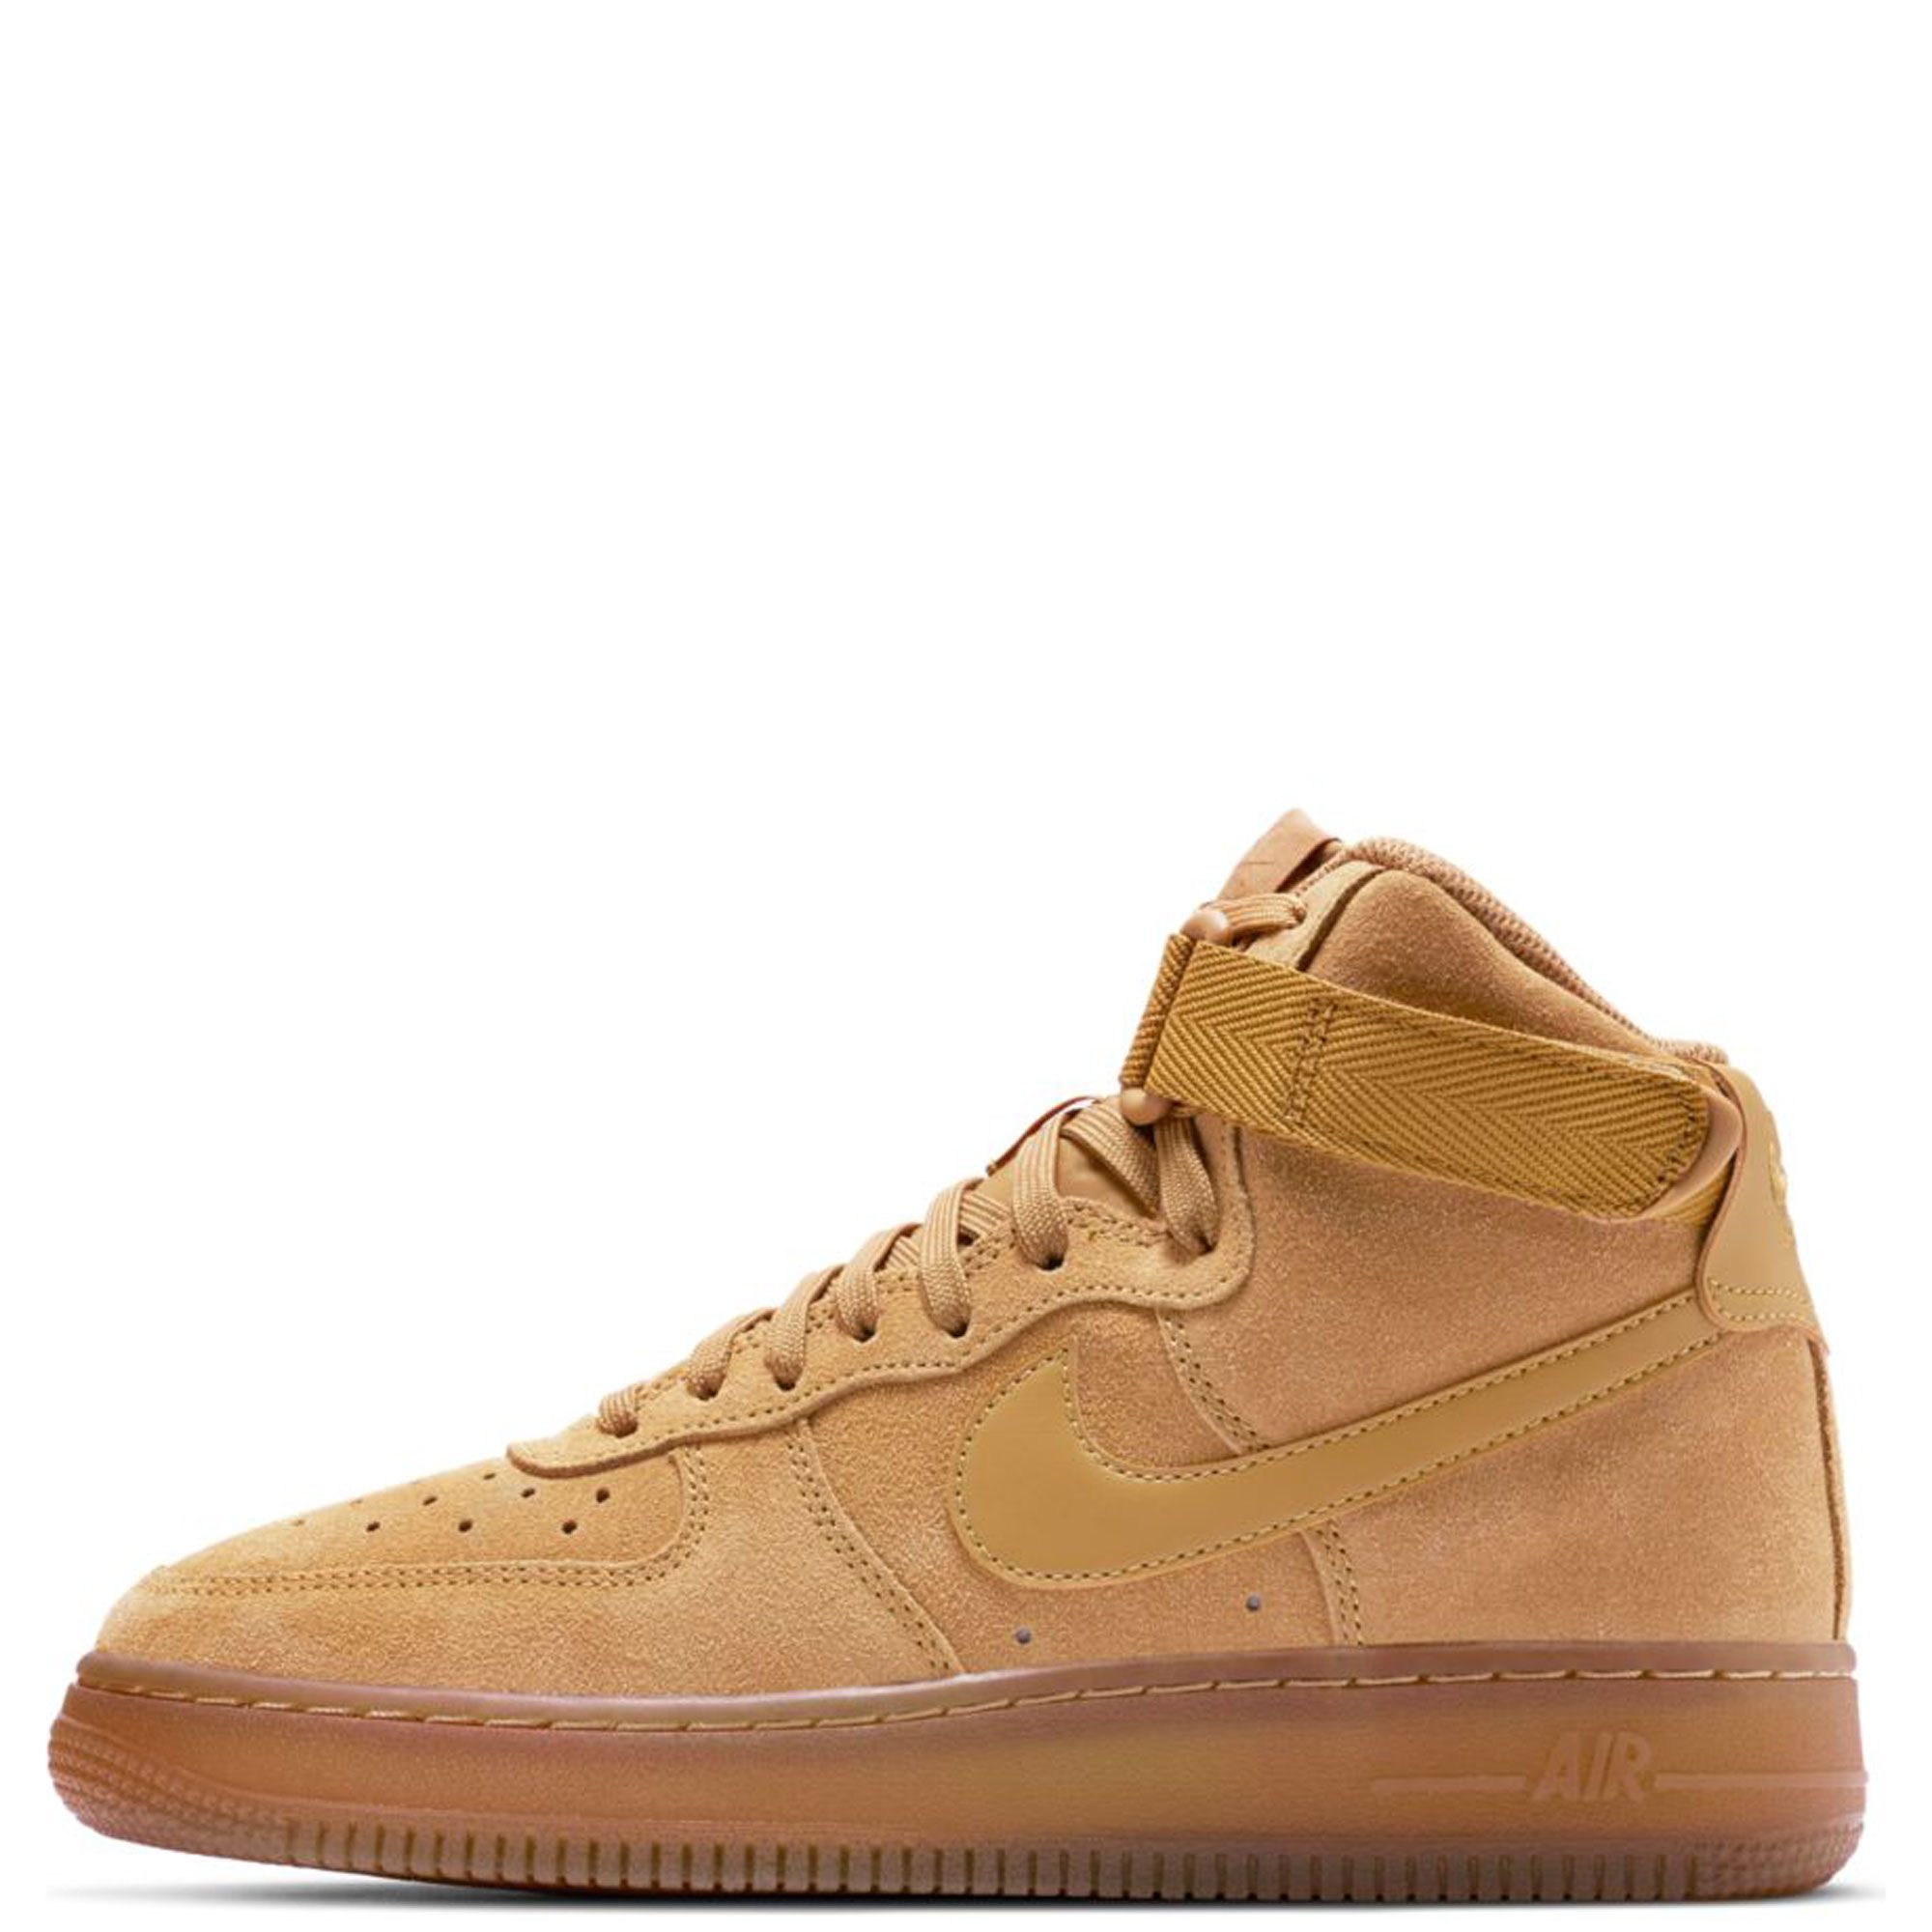 Air Force 1 High LV8 3 GS 'Wheat' - Nike - CK0262 700 - wheat/wheat/gum  light brown